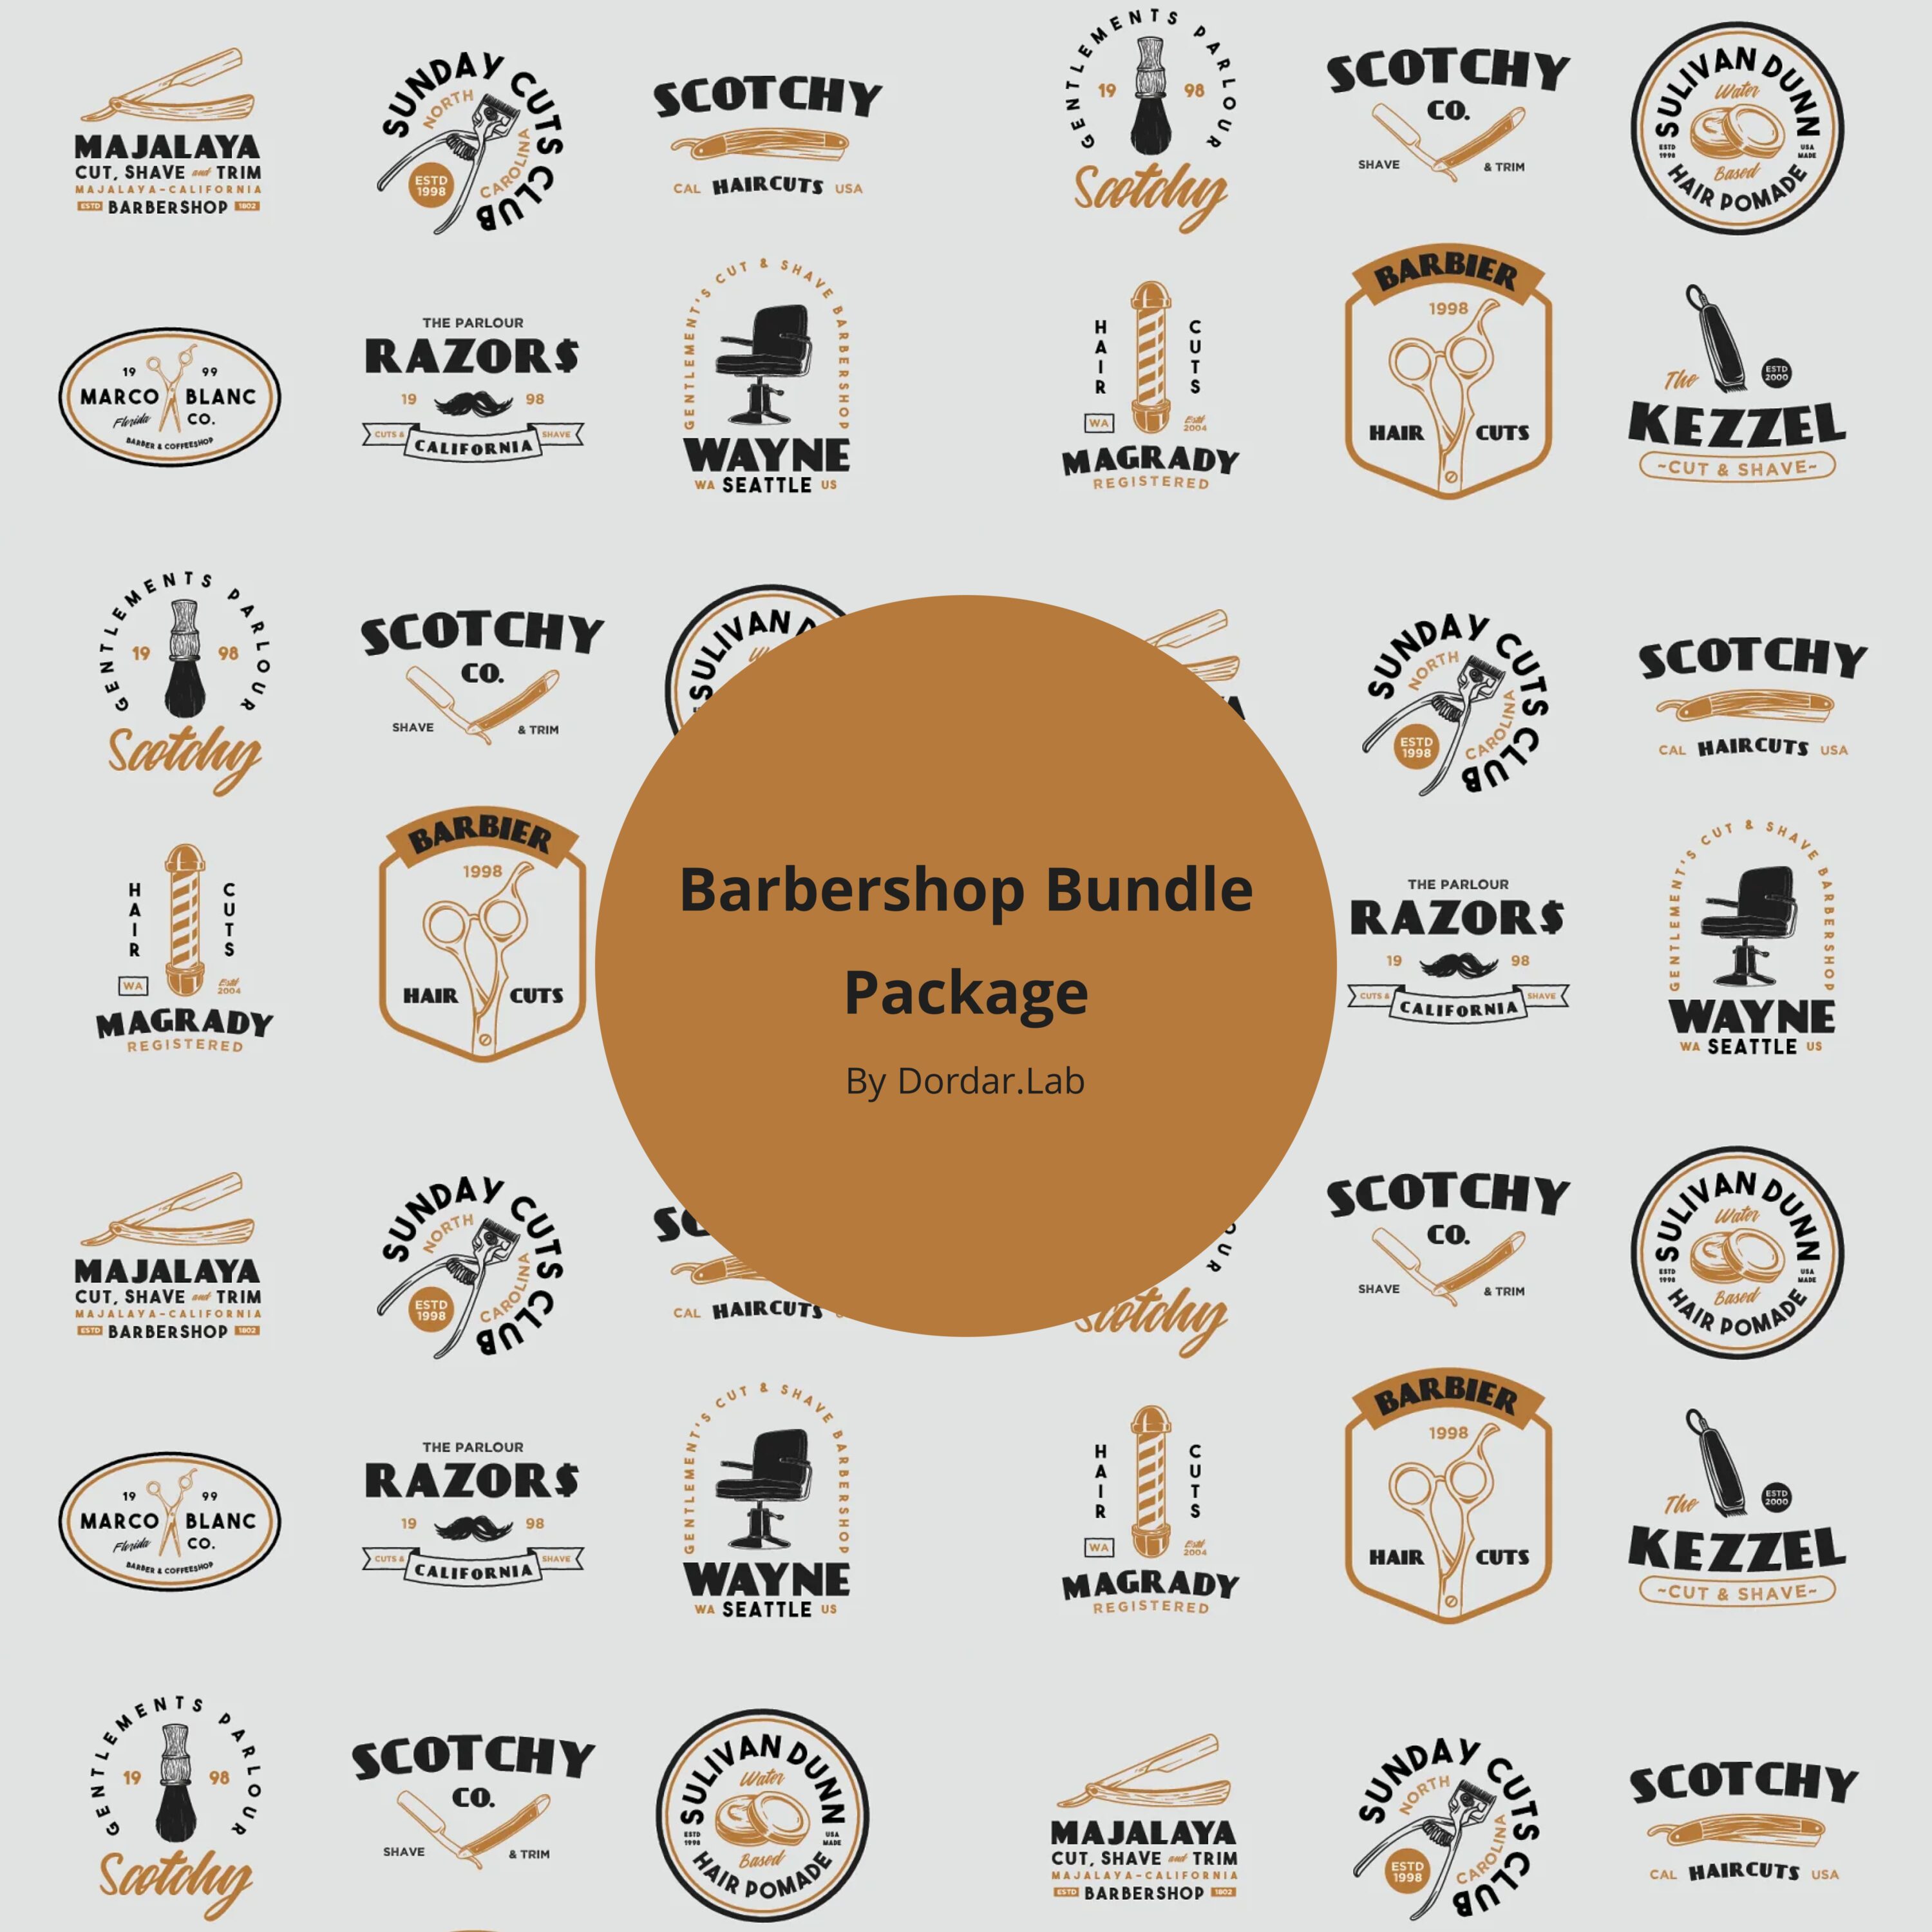 Barbershop Bundle Package cover.